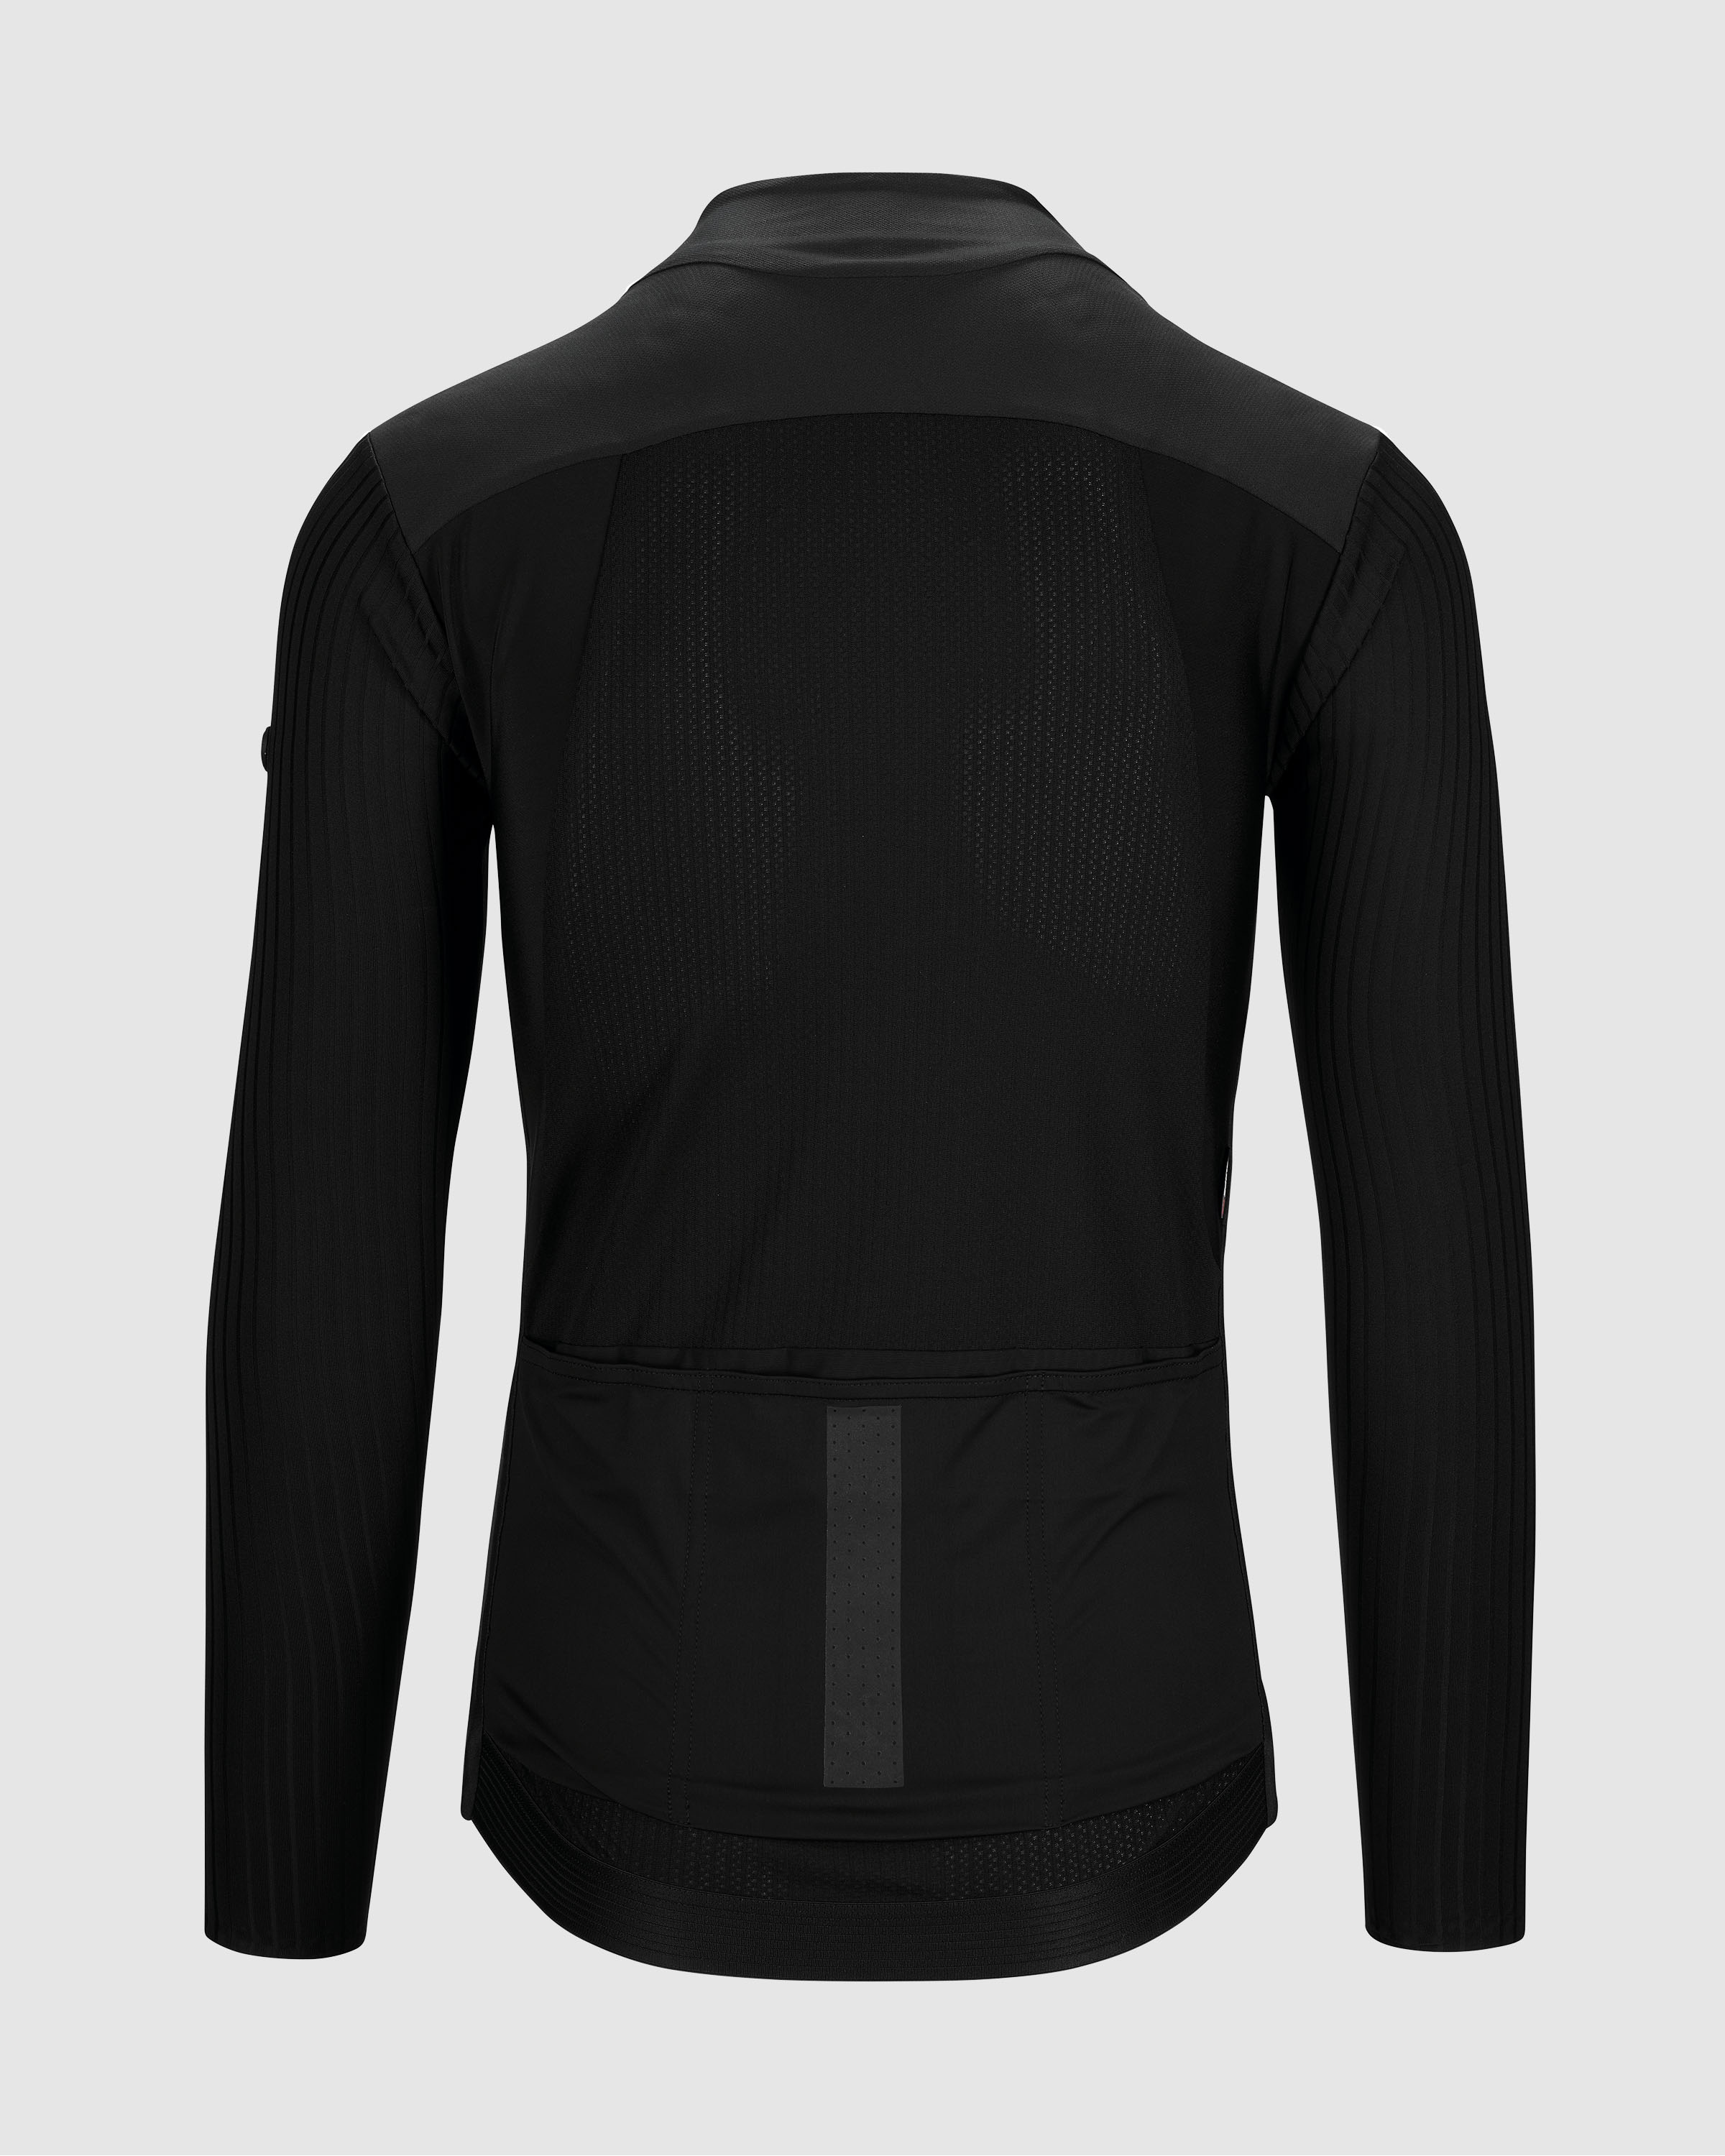 EQUIPE RS Spring Fall Jacket TARGA, Black » ASSOS Of Switzerland